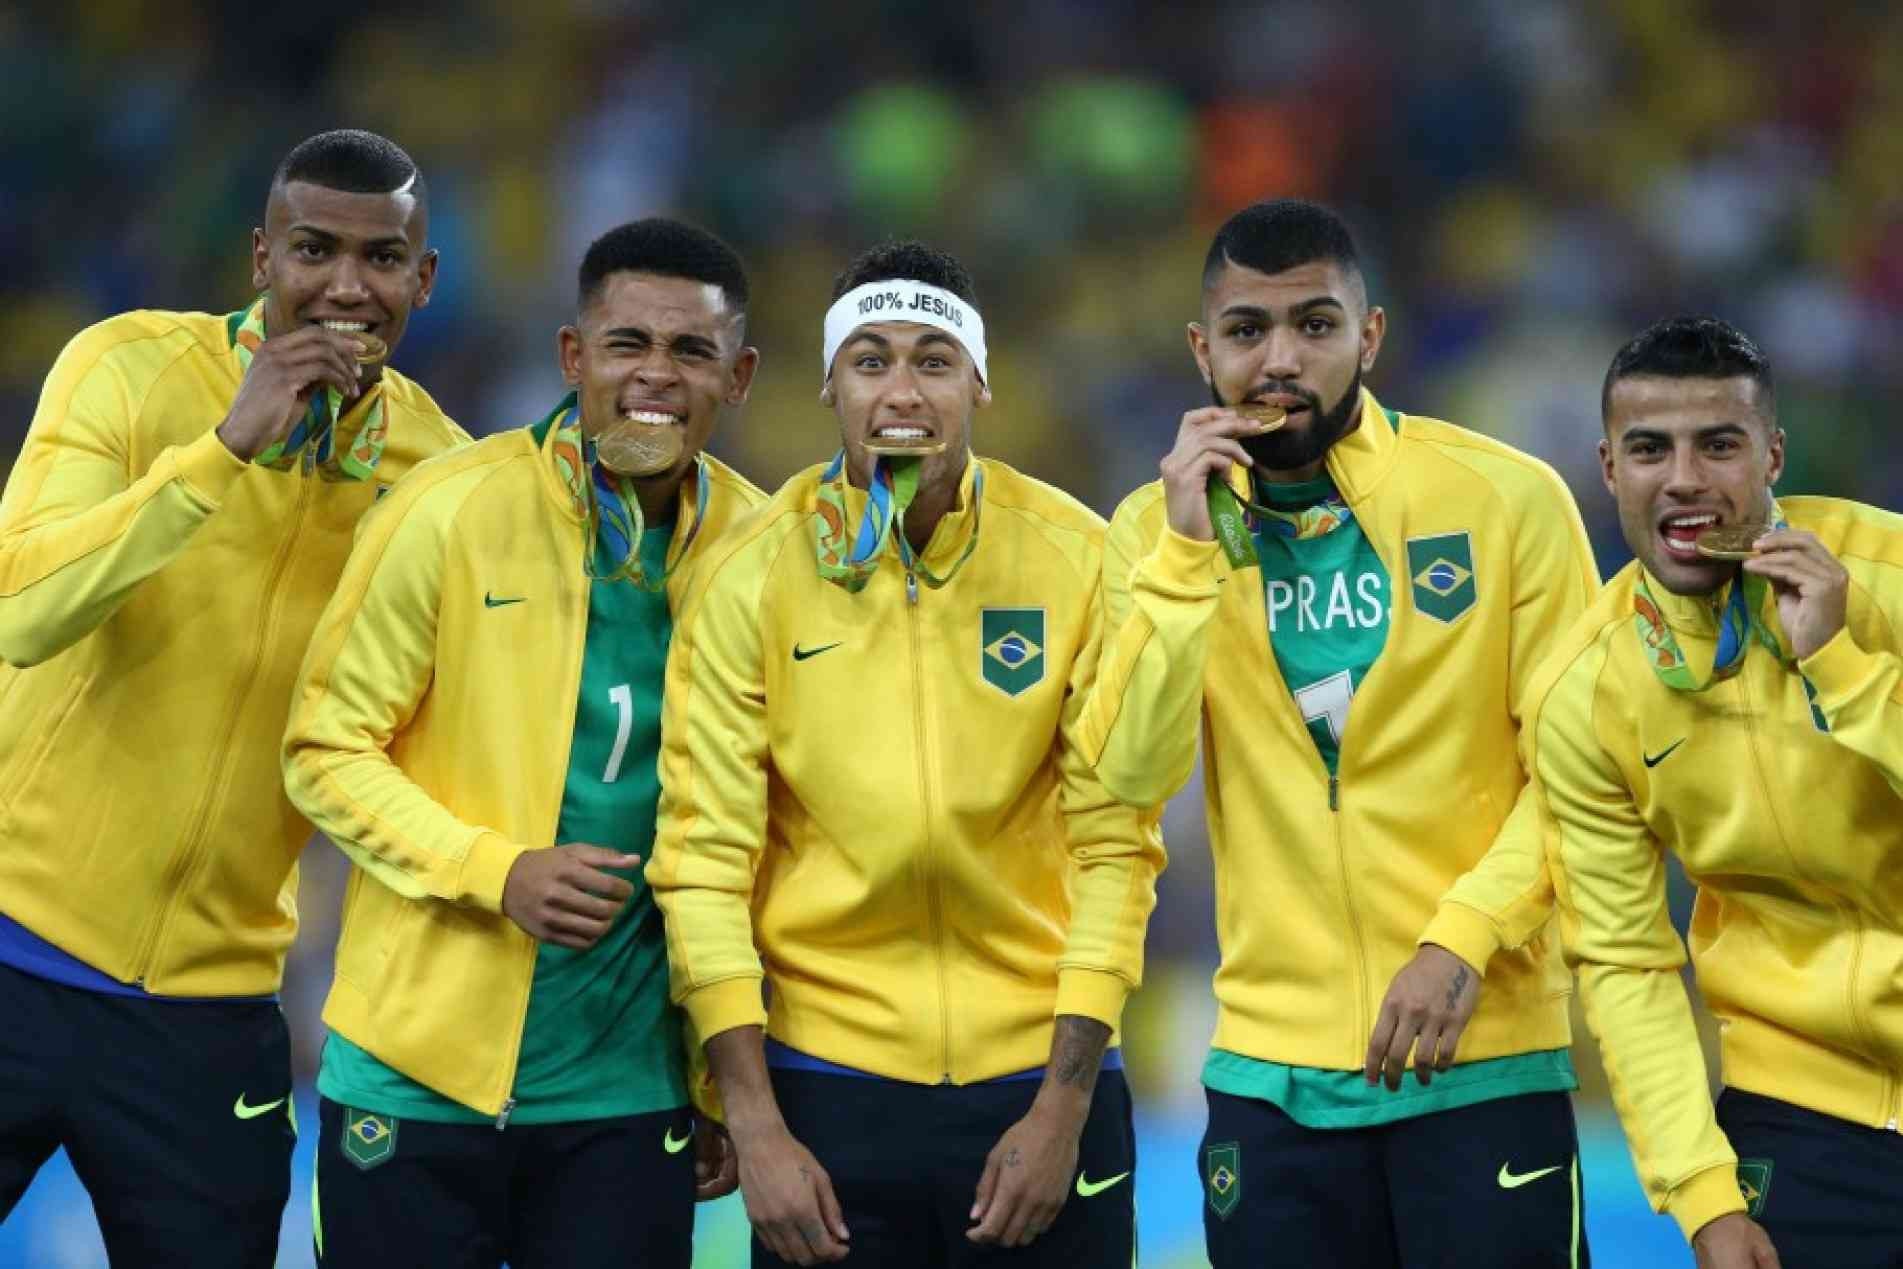 Parte do elenco da Seleção Brasileira olímpica, com a medalha de ouro no Rio-2016.